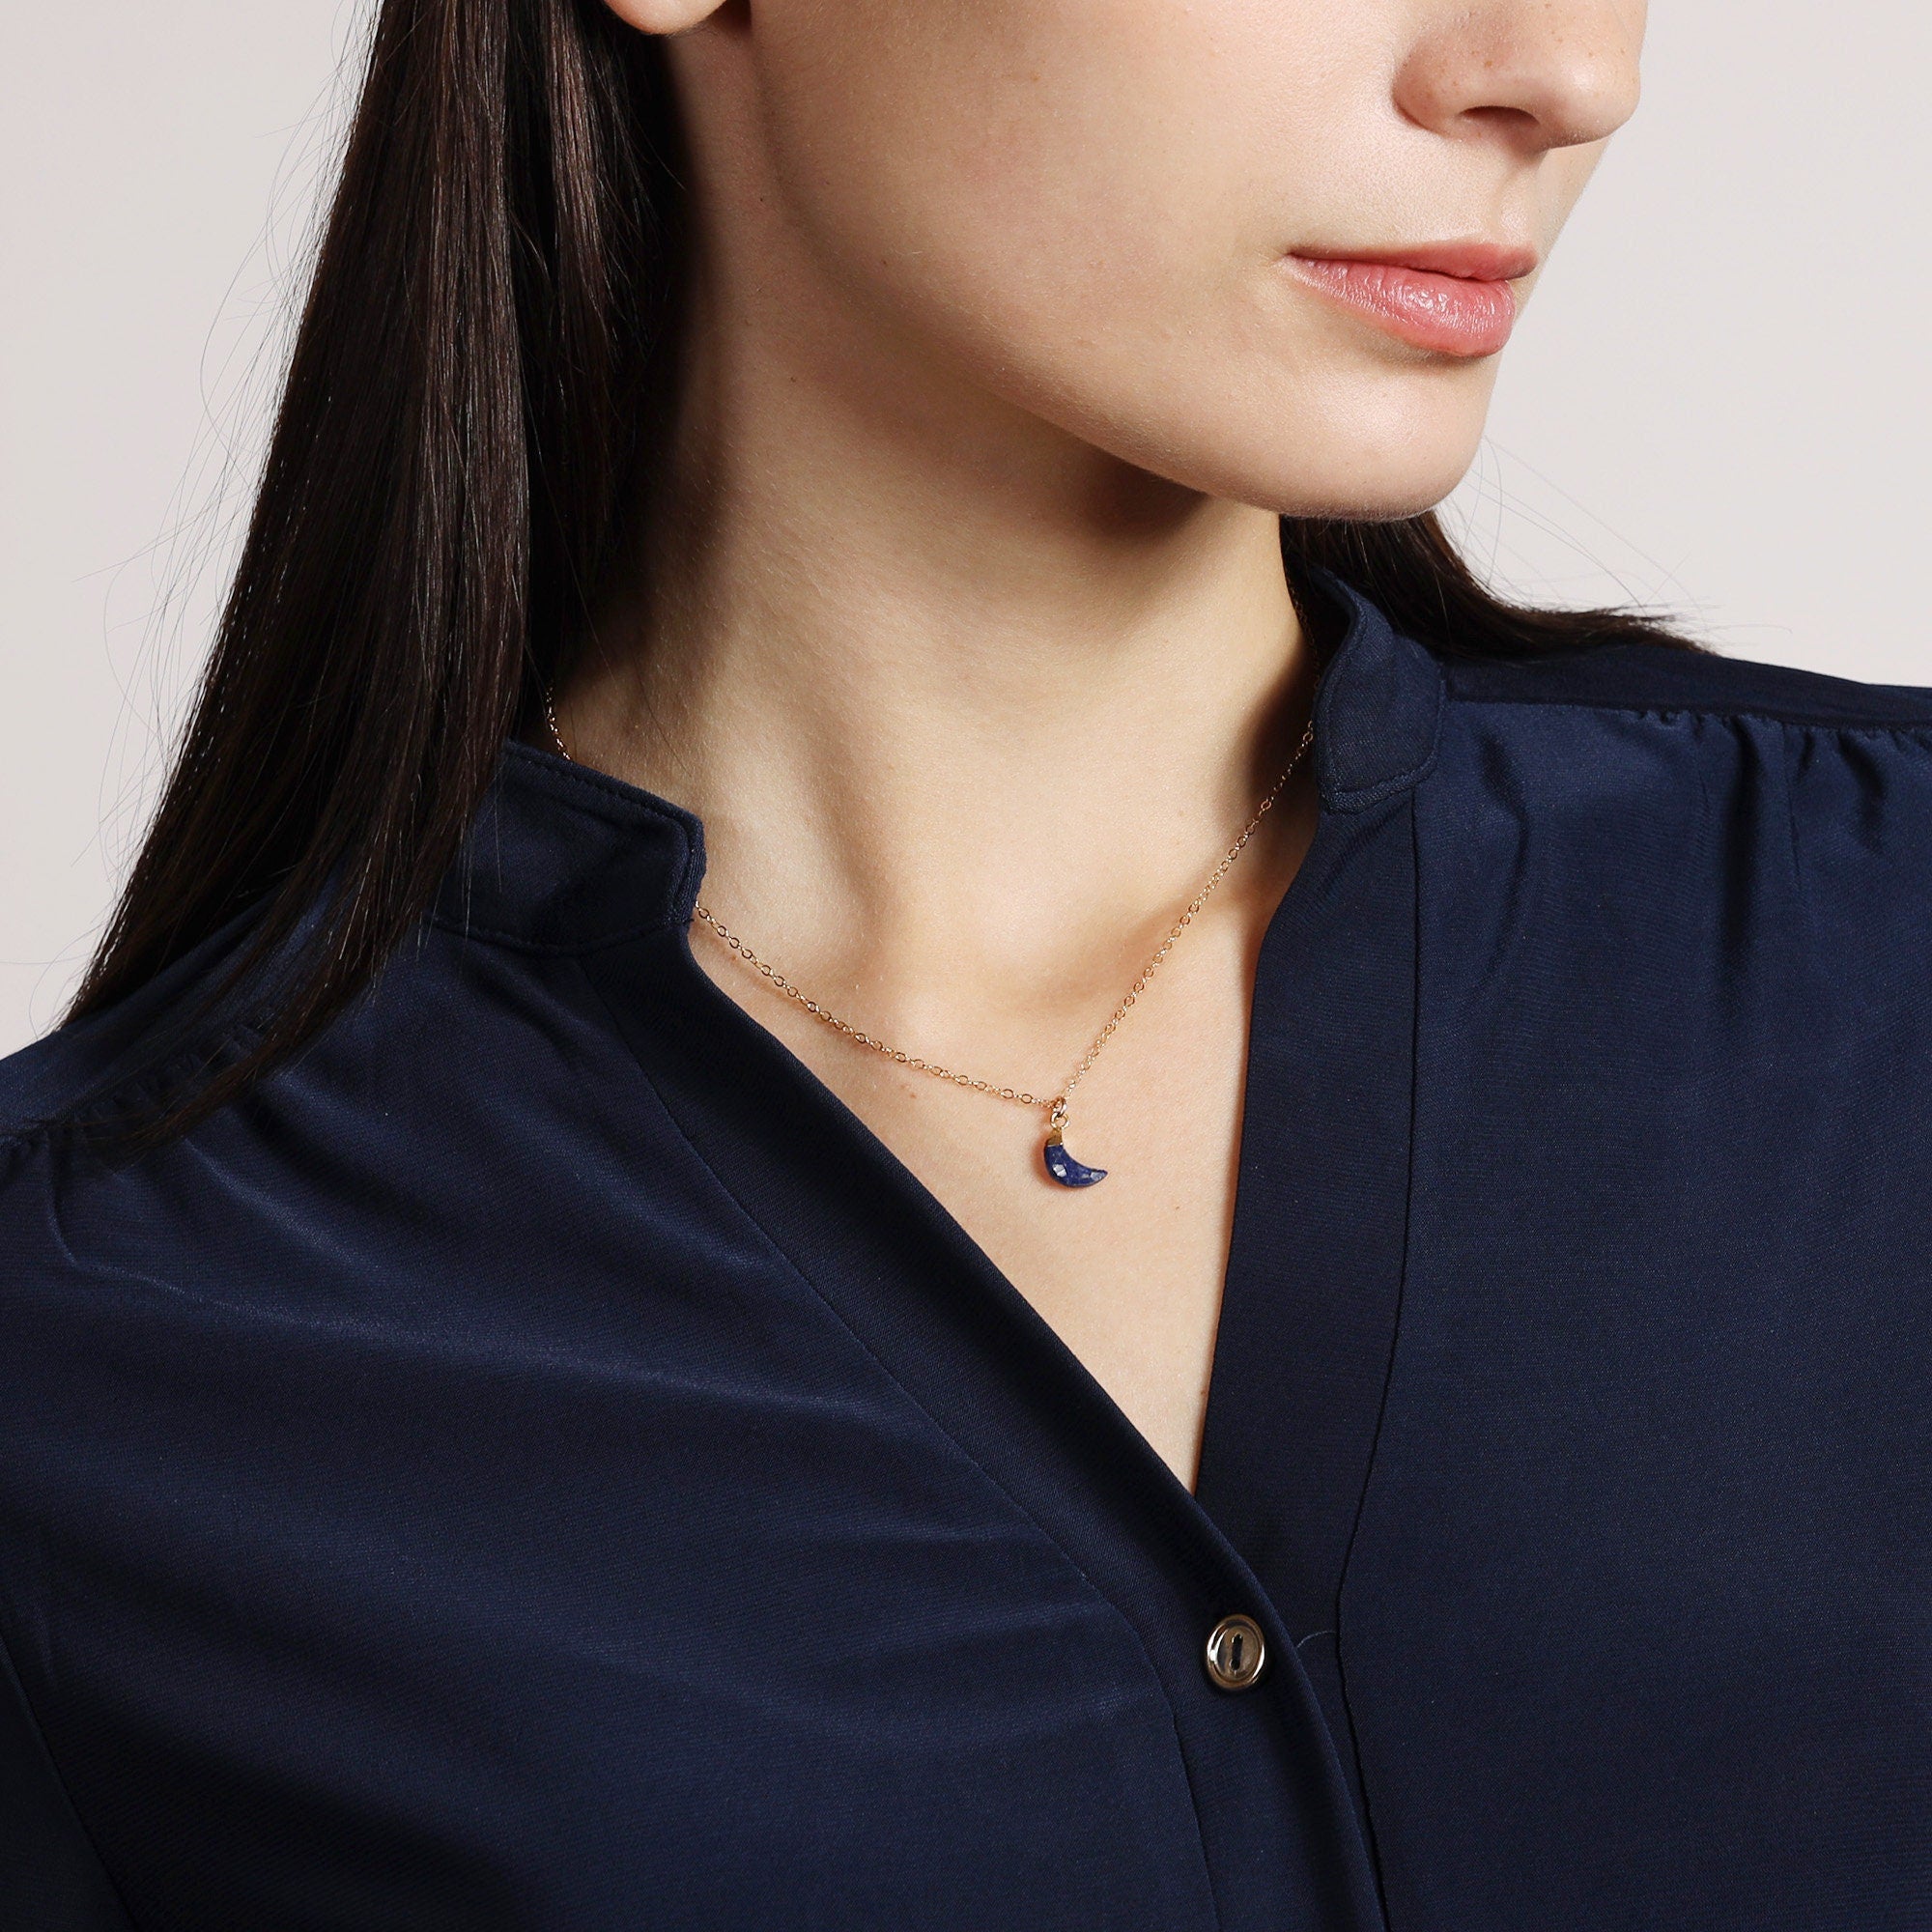 Lapis Lazuli Mini Moon Gemstone Pendant Gold Necklace Necklaces Soul & Little Rose   